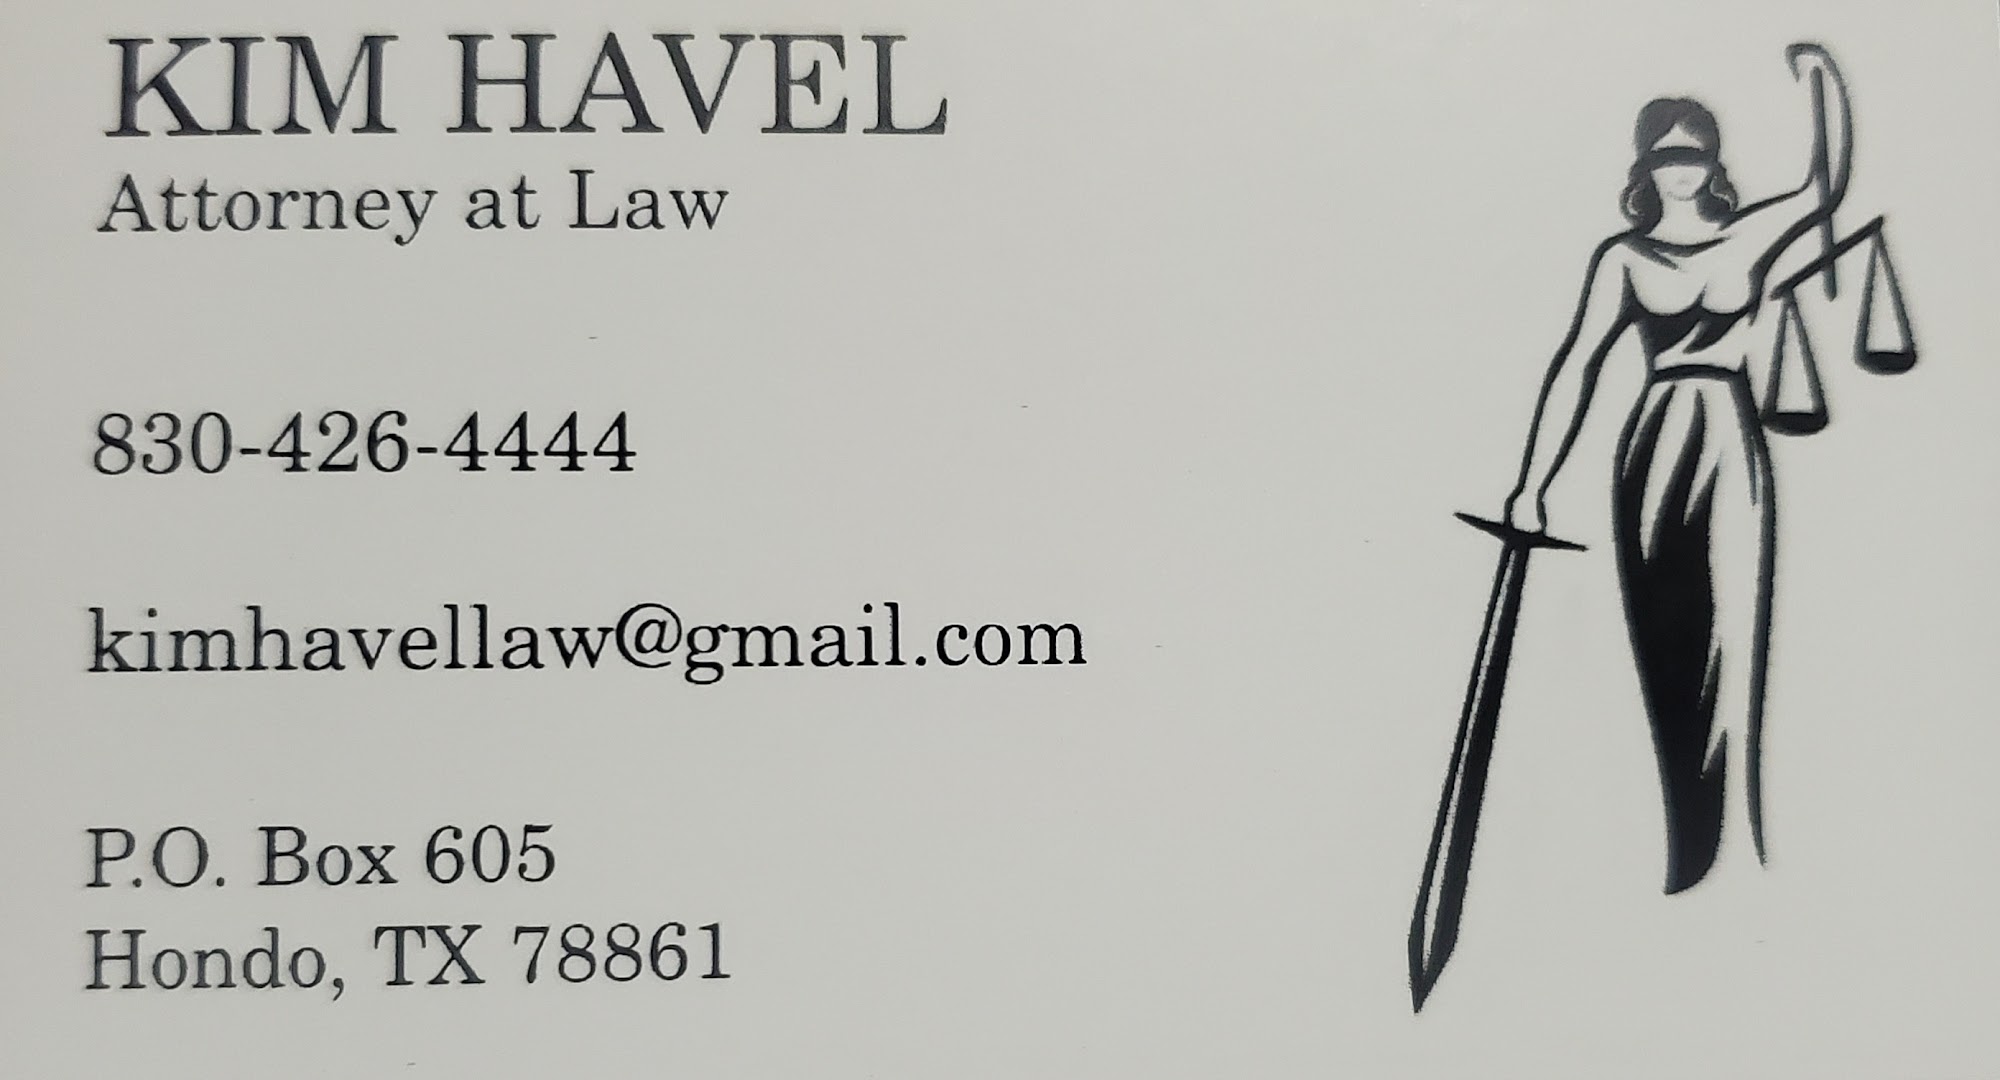 Kim Havel Law 1008 15th St, Hondo Texas 78861